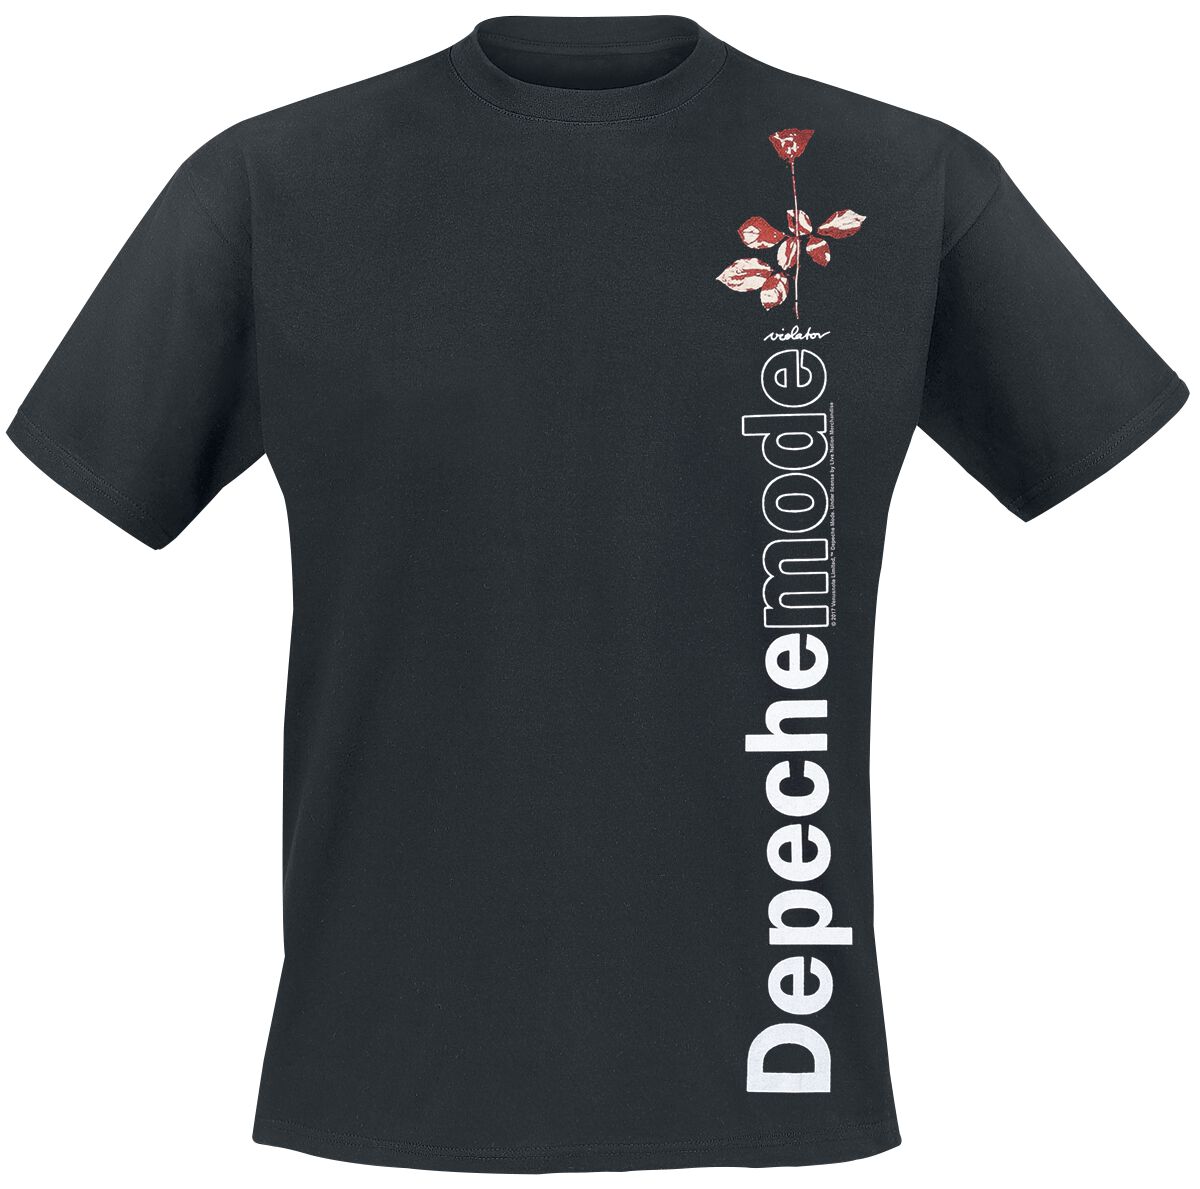 Depeche Mode T-Shirt - Violator Side Rose - S bis XXL - für Männer - Größe S - schwarz  - Lizenziertes Merchandise!